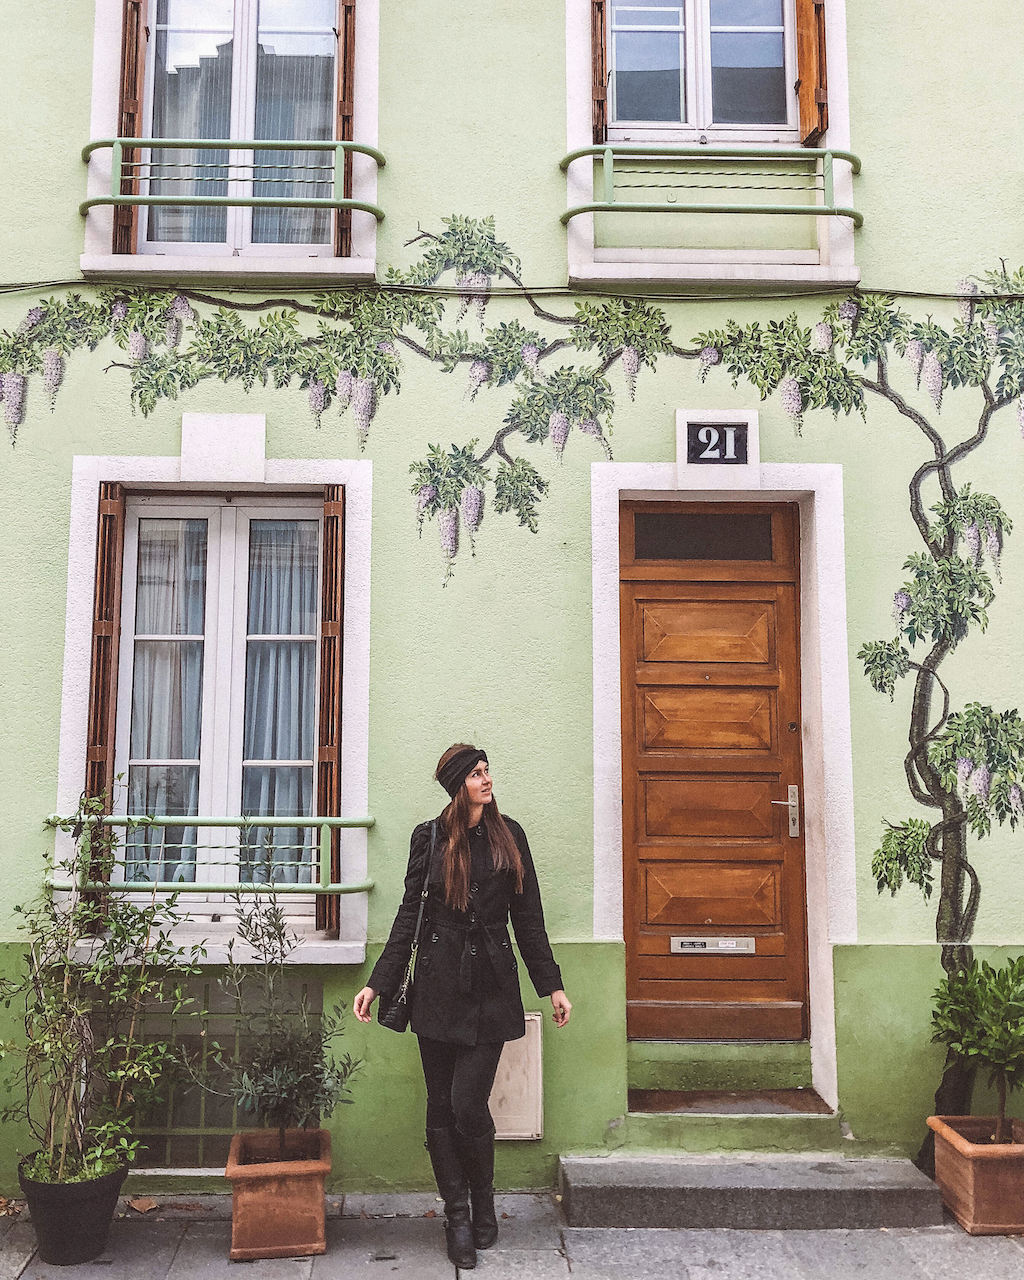 Green house on Rue Crémieux - Paris - France